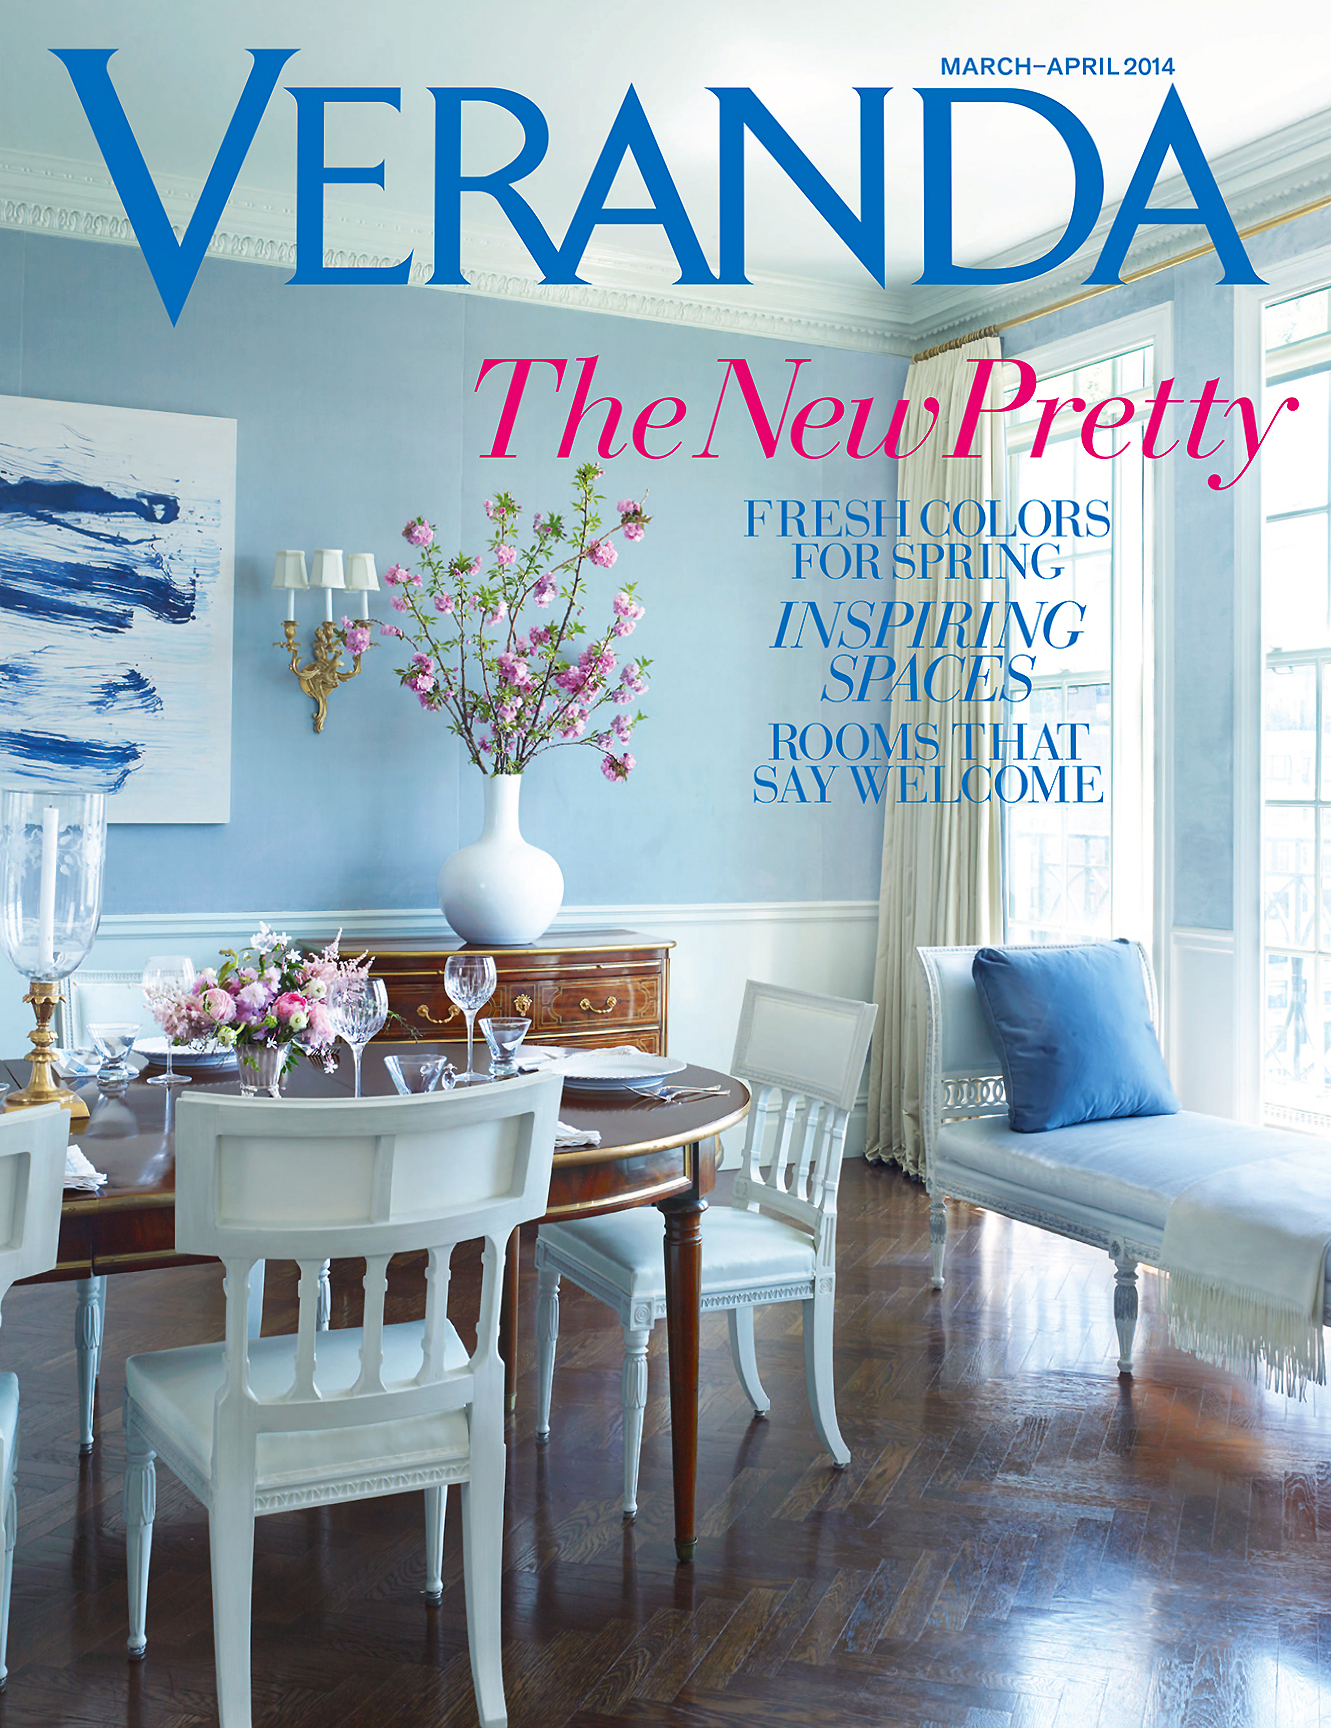 Veranda COVER_March April 2014.jpg